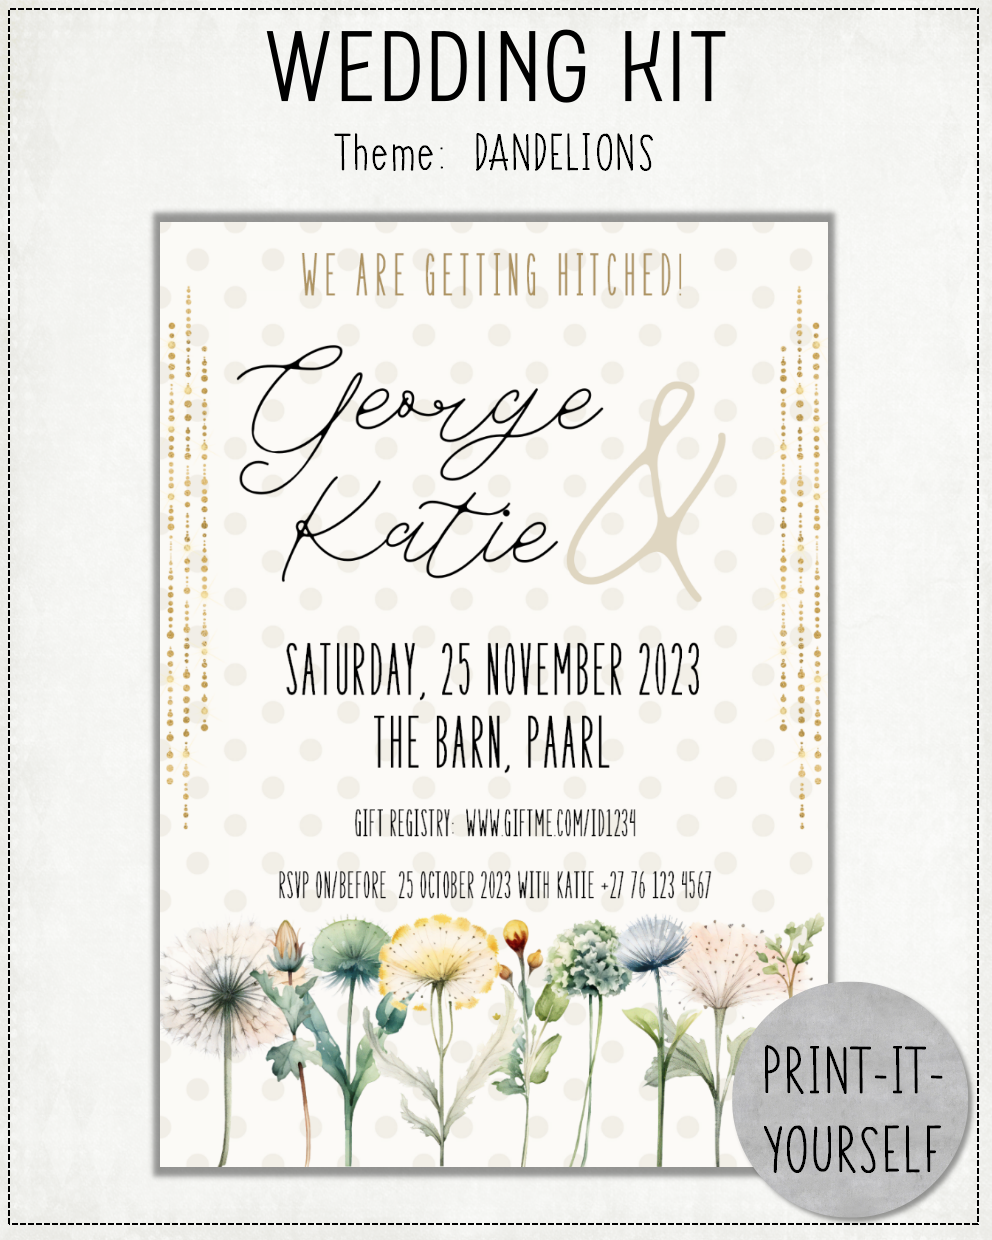 PRINT-IT-YOURSELF KIT:  Wedding - Dandelions